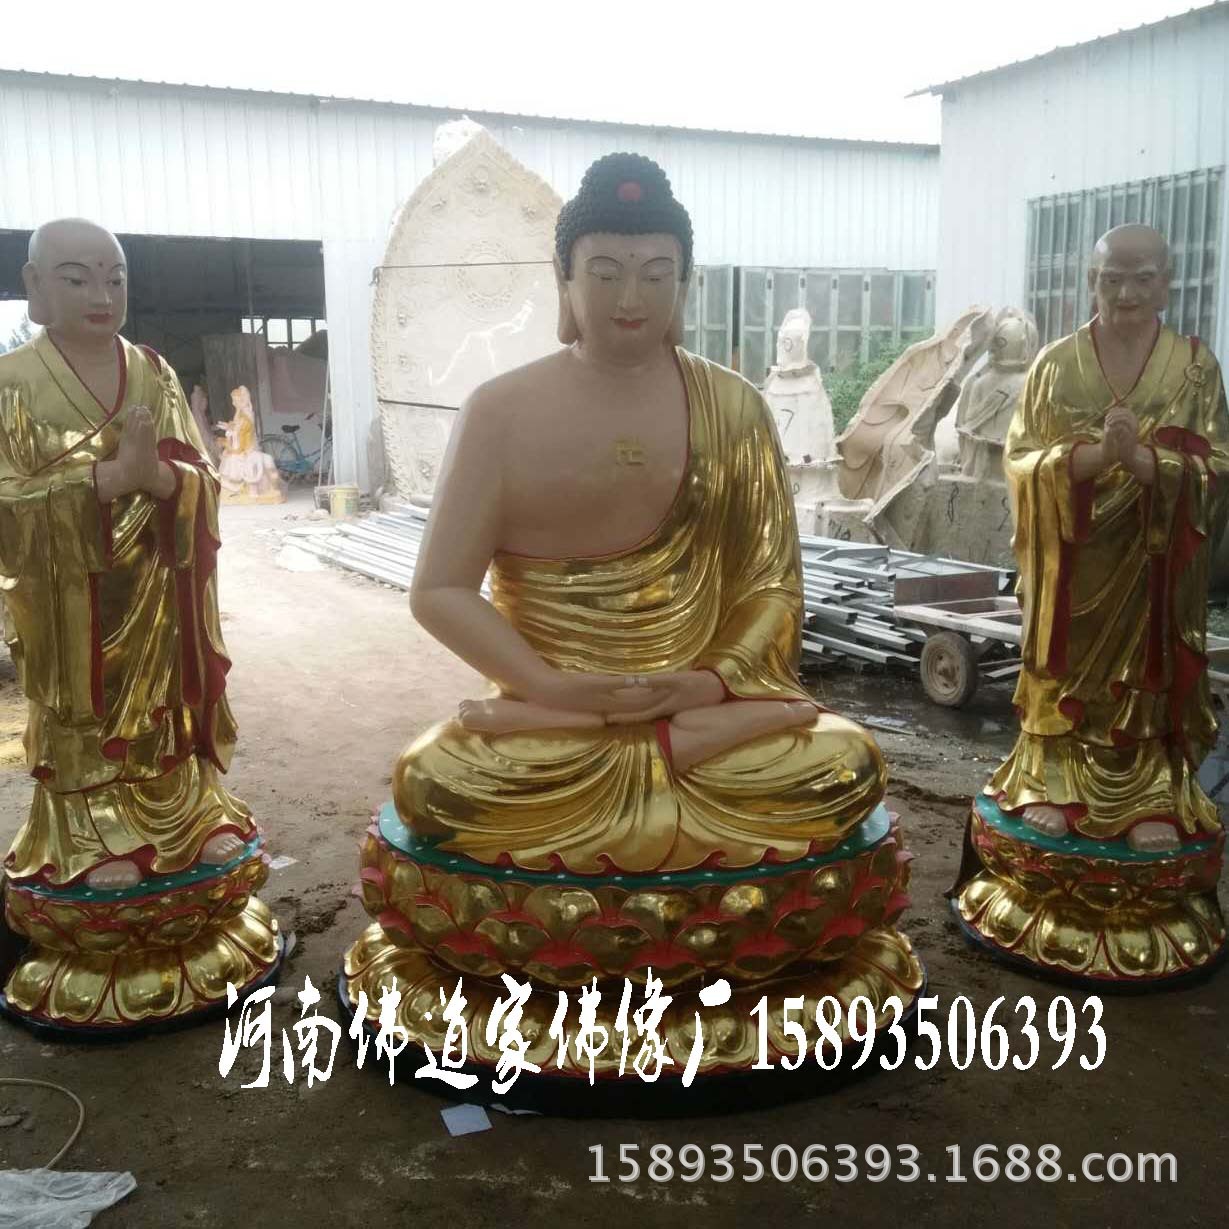 藏传佛教藏佛密宗佛像 百年传承供应佛教用品 河南大型佛像神像示例图3